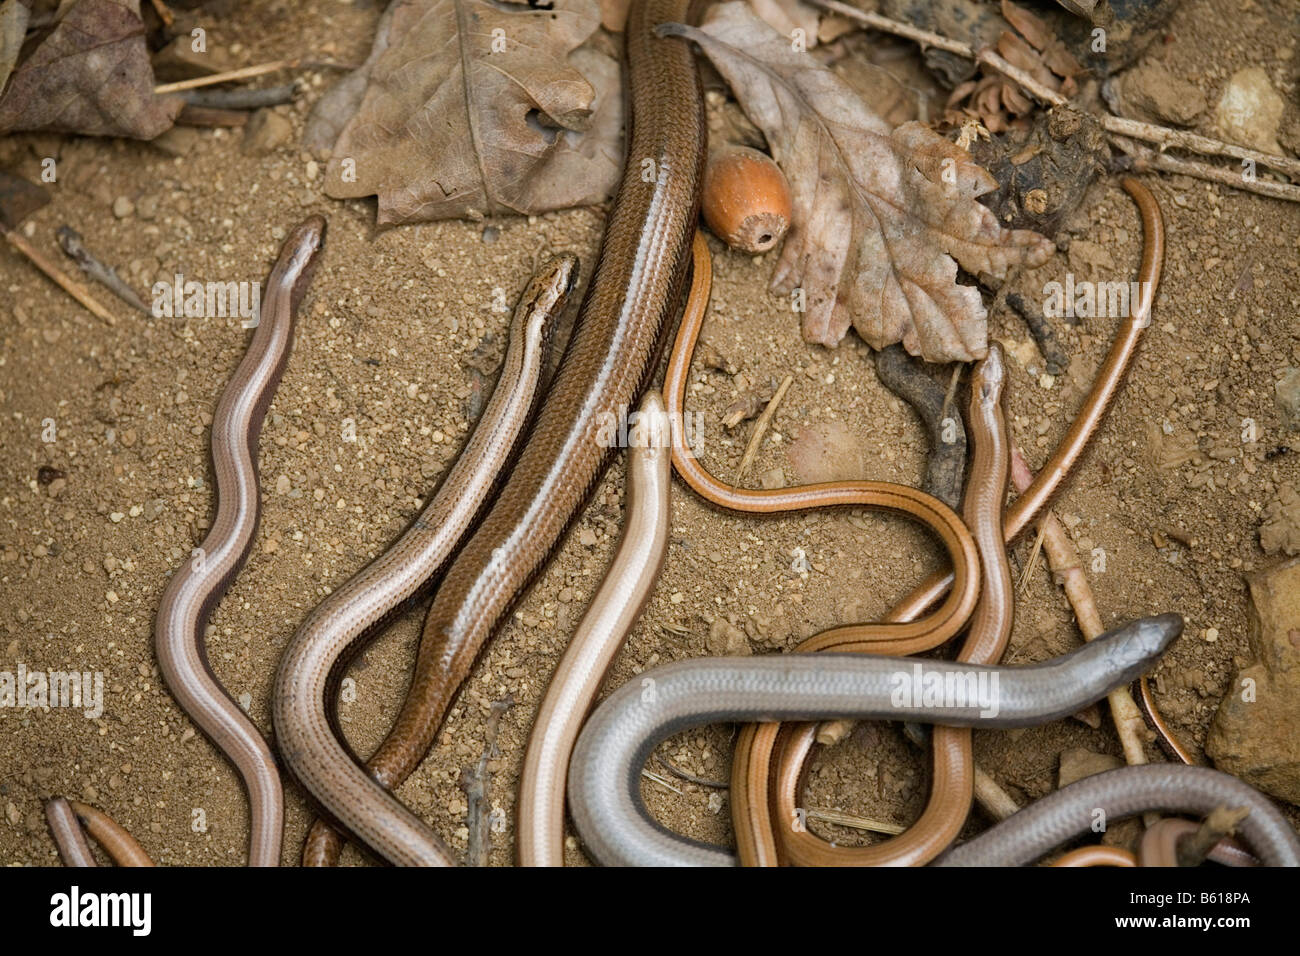 slow worms Anguis fragilis Stock Photo